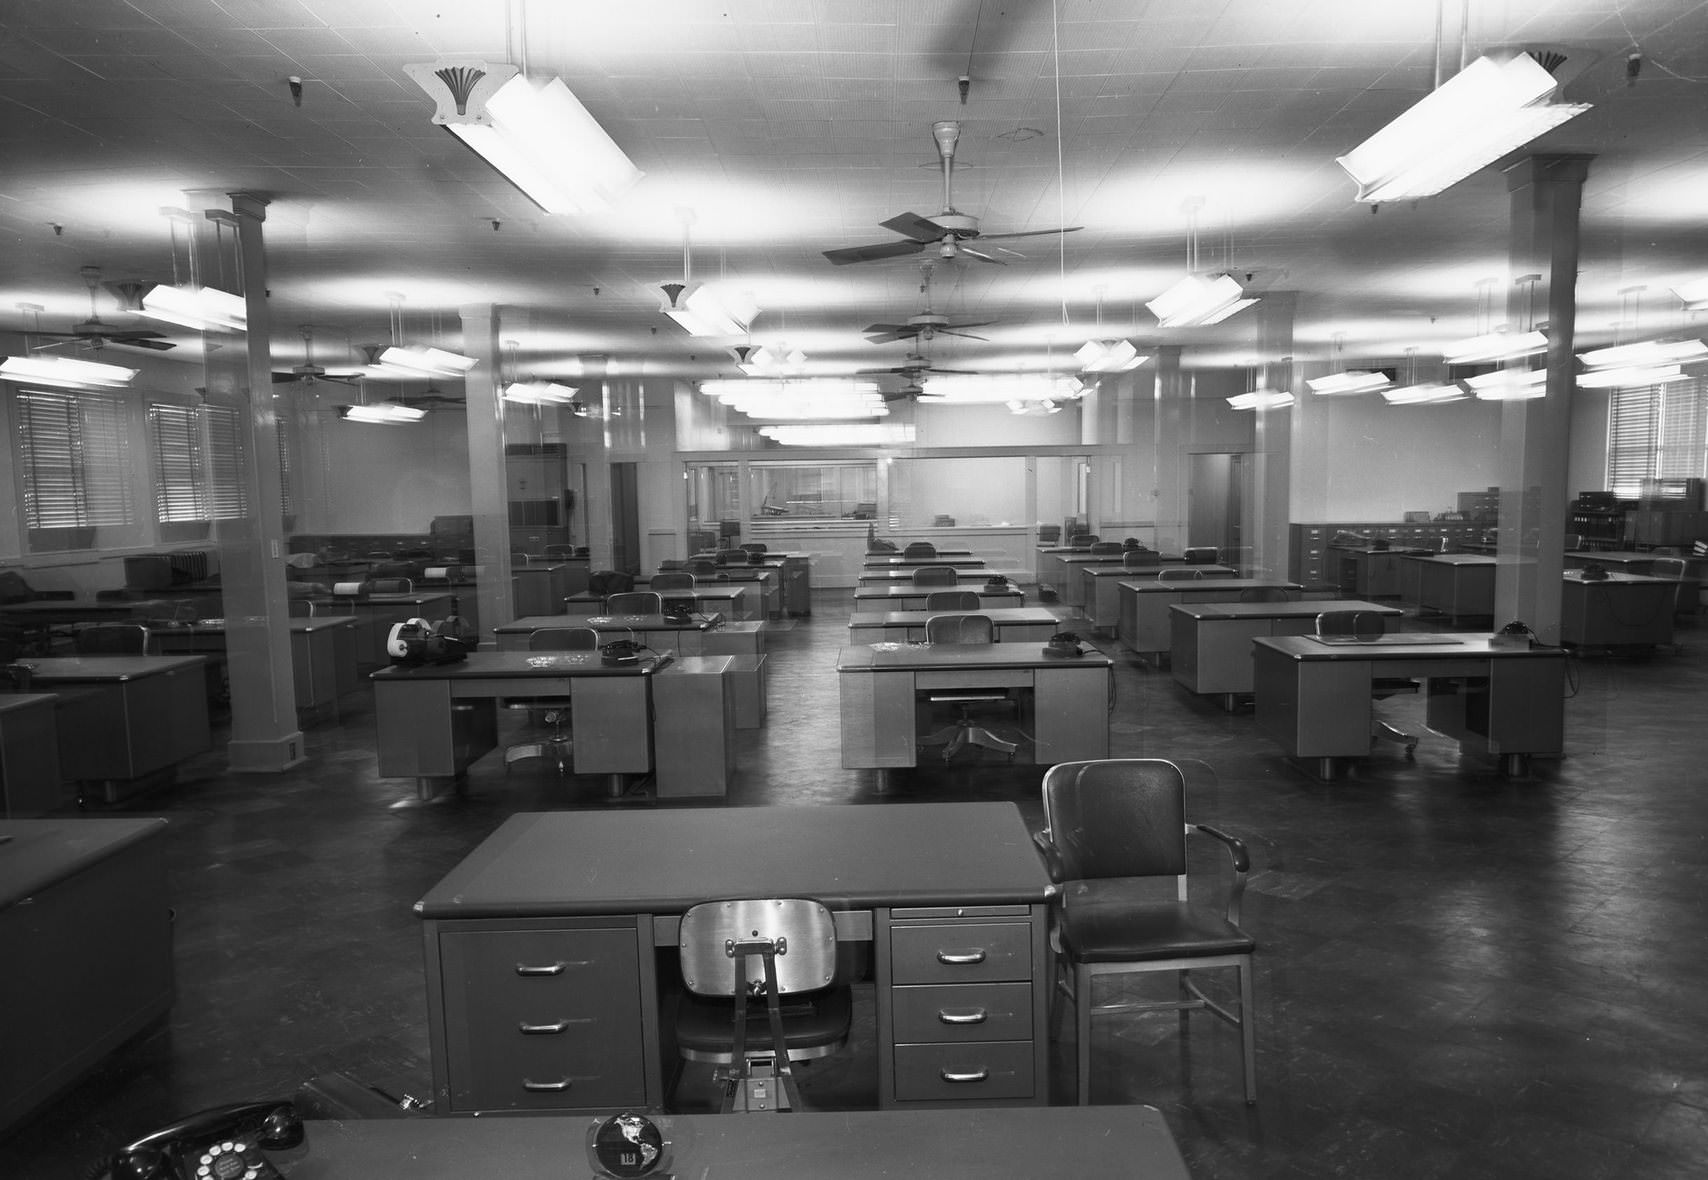 Otis Elevator Company building interior, Dallas, Texas, 1953